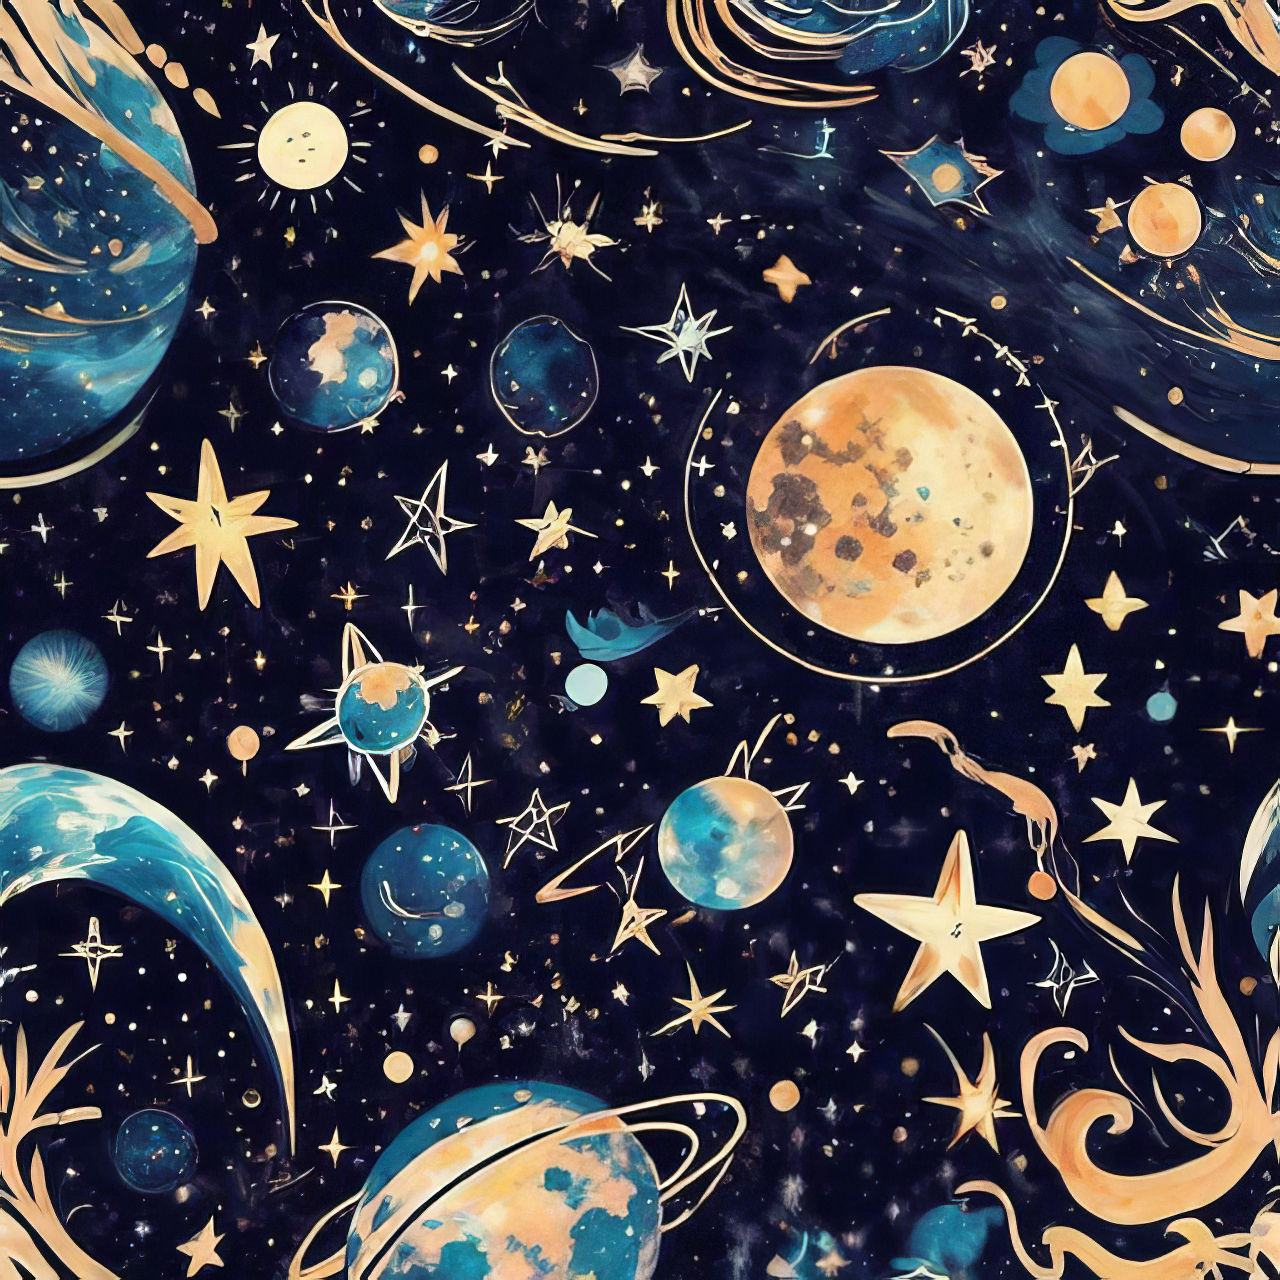 オシャレでカッコイイ星空と宇宙のアニメ風の壁紙＆かわいいアイコン模様のフリーイラストの壁紙素材